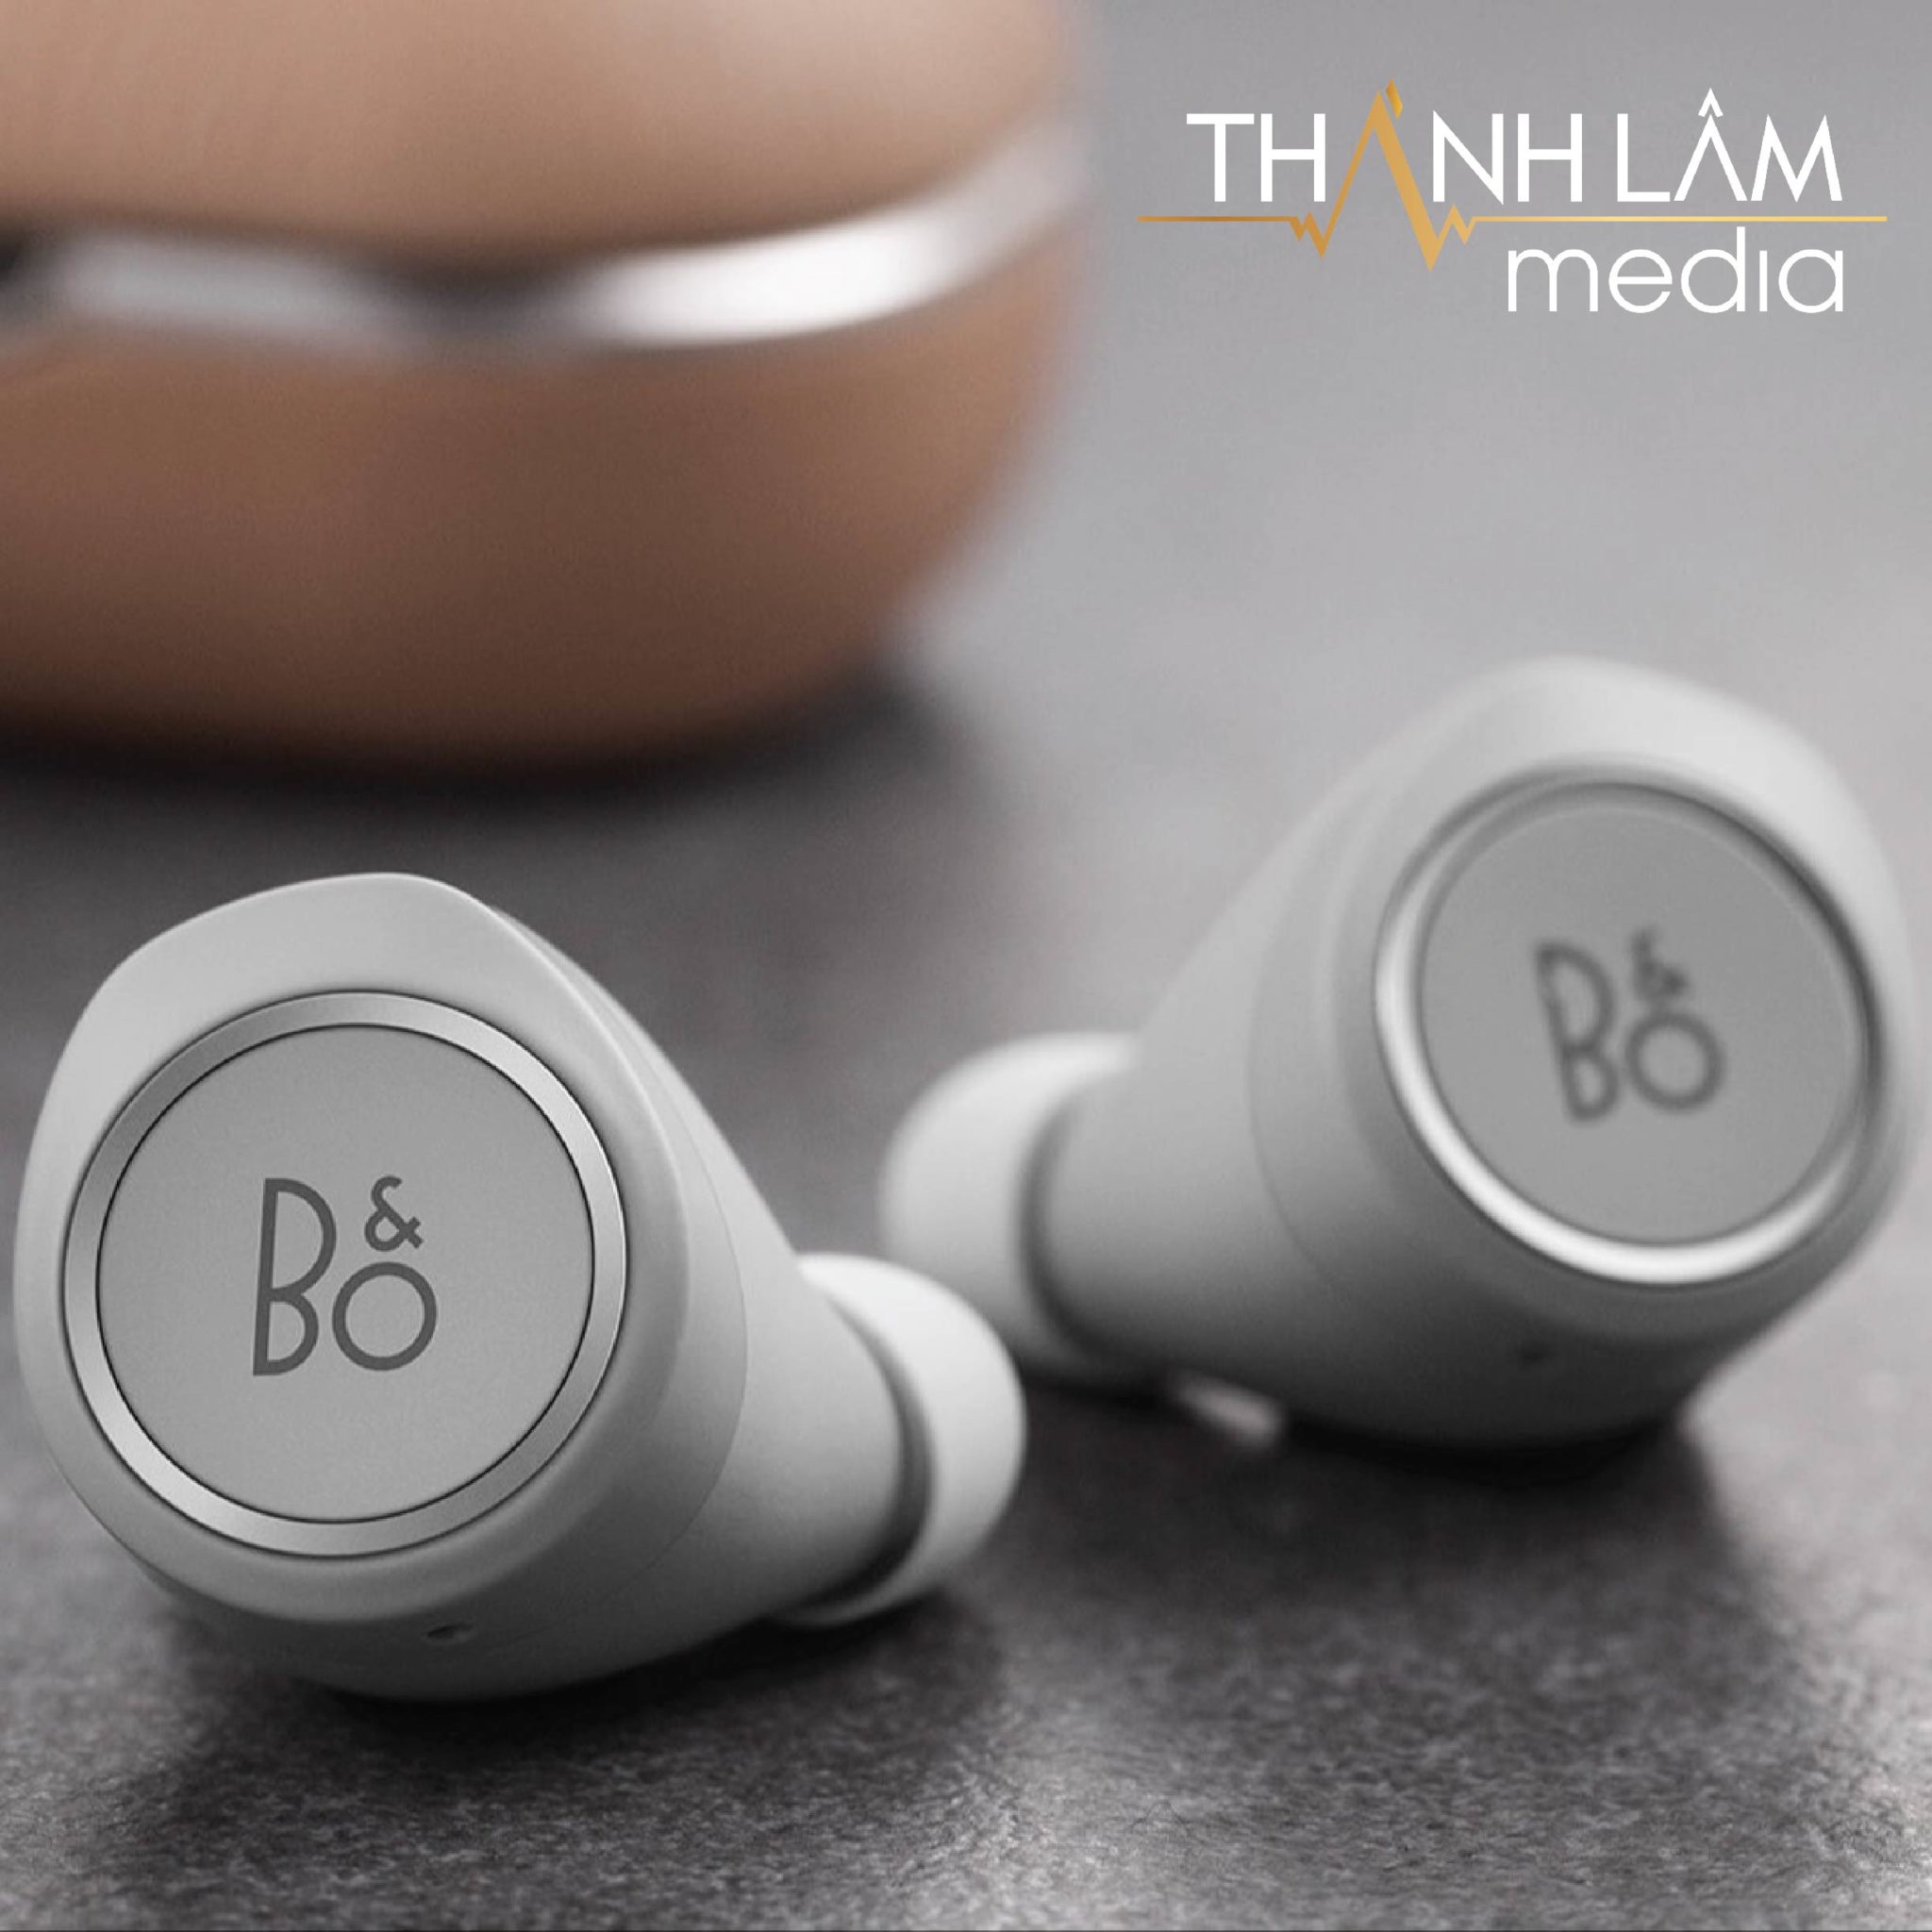 Là một thiết bị không dây nên tai nghe Beoplay E8 2.0 sẽ có thể kết nối với điện thoại của bạn qua Bluetooth